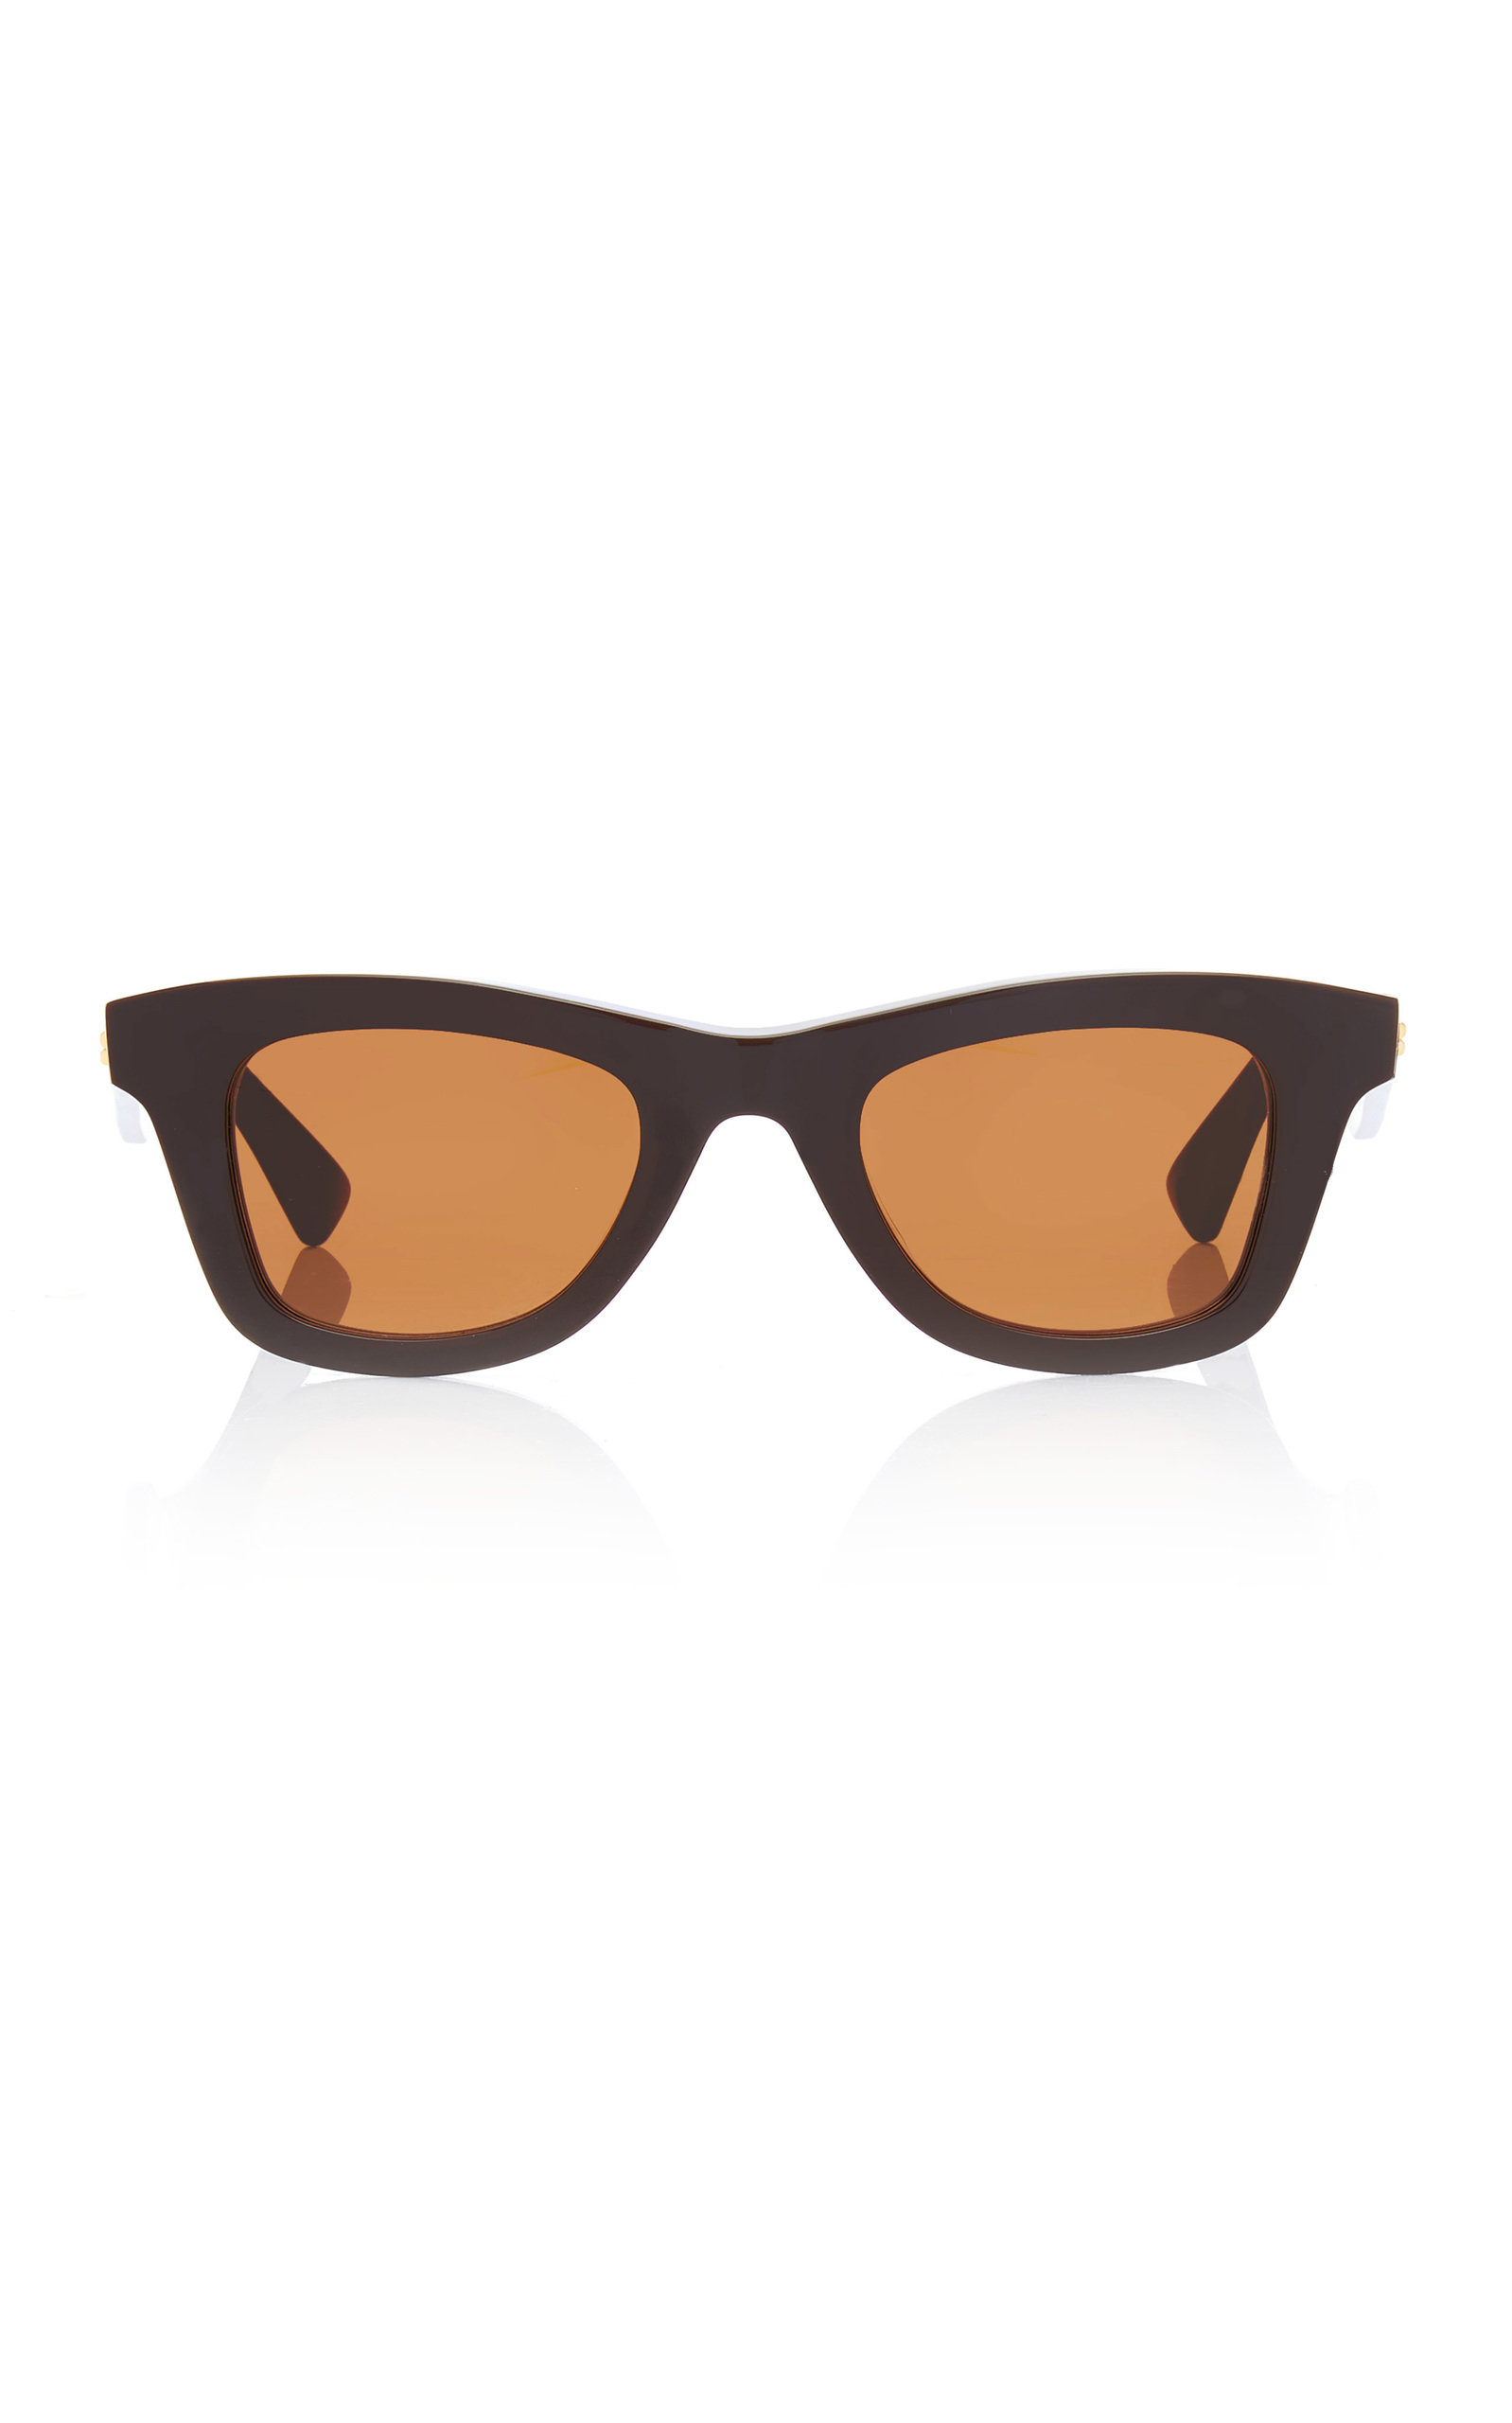 Bottega Veneta - Women's Square-Frame Acetate Sunglasses - Brown - Moda Operandi